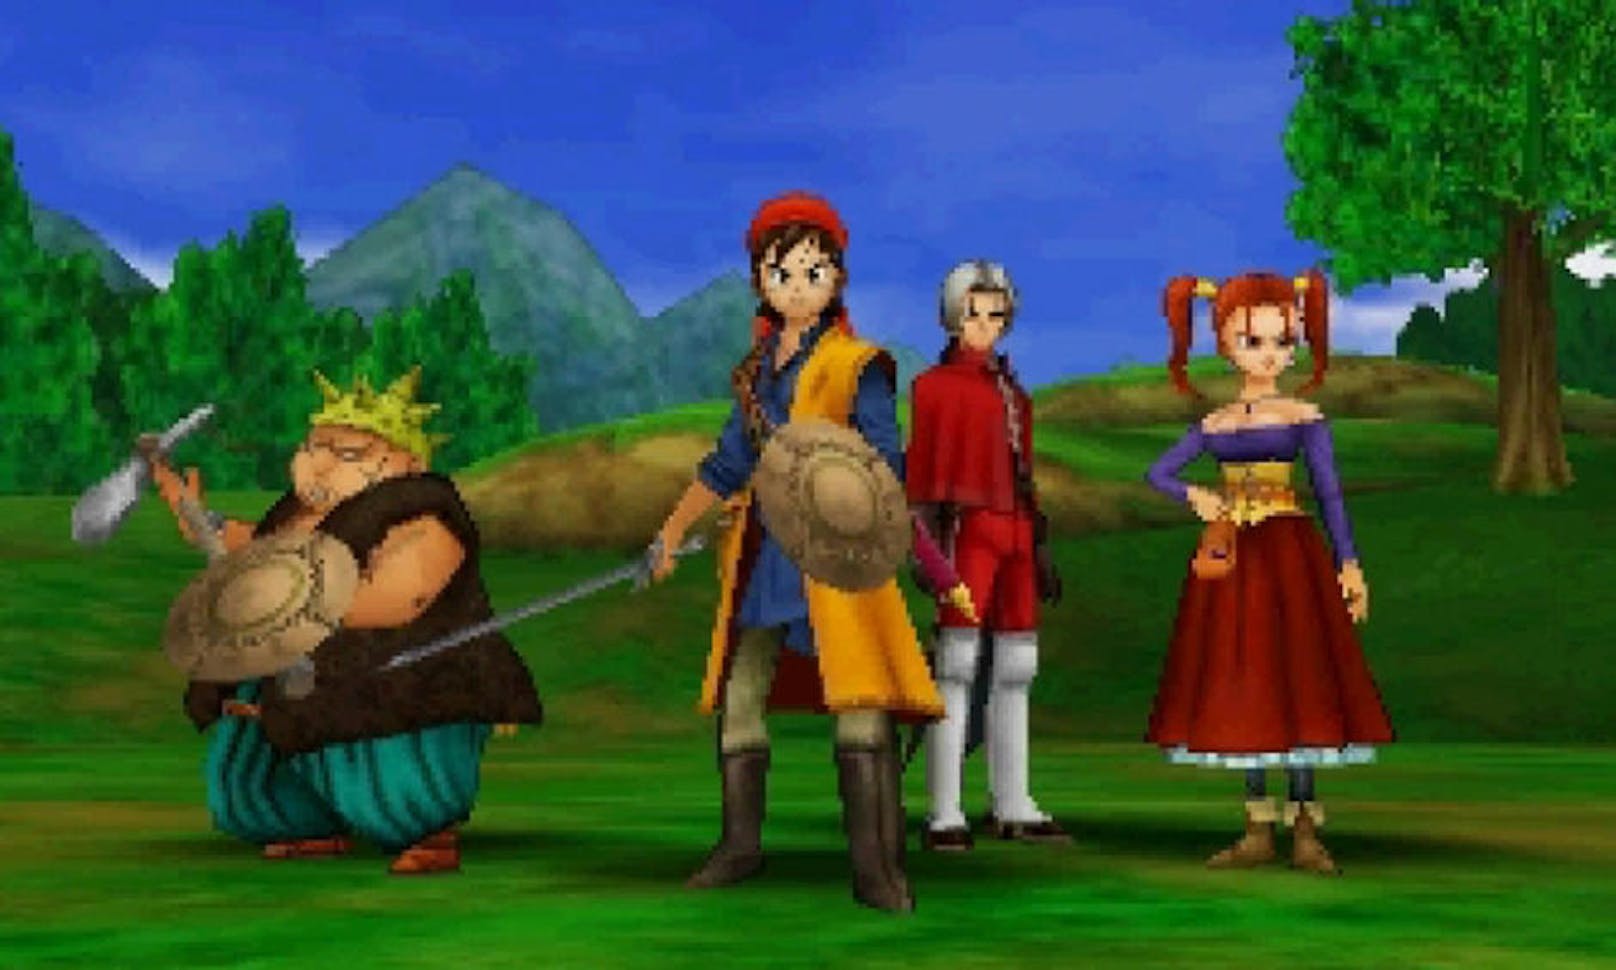 Der verwunschene König ist kein Unbekannter, ging er doch in Japan schon 2004 und in Europa 2006 auf seine Reise. Im Jänner 2017 erschien mit <b>Dragon Quest VIII: Die Reise des verwunschenen Königs</b> das Abenteuer neu auf dem Nintendo 3DS. <a href="https://www.heute.at/digital/games/story/Dragon-Quest-VIII-im-Test--Feinschliff-des-Titels-14231930">Hier lesen Sie unser Game Review.</a>